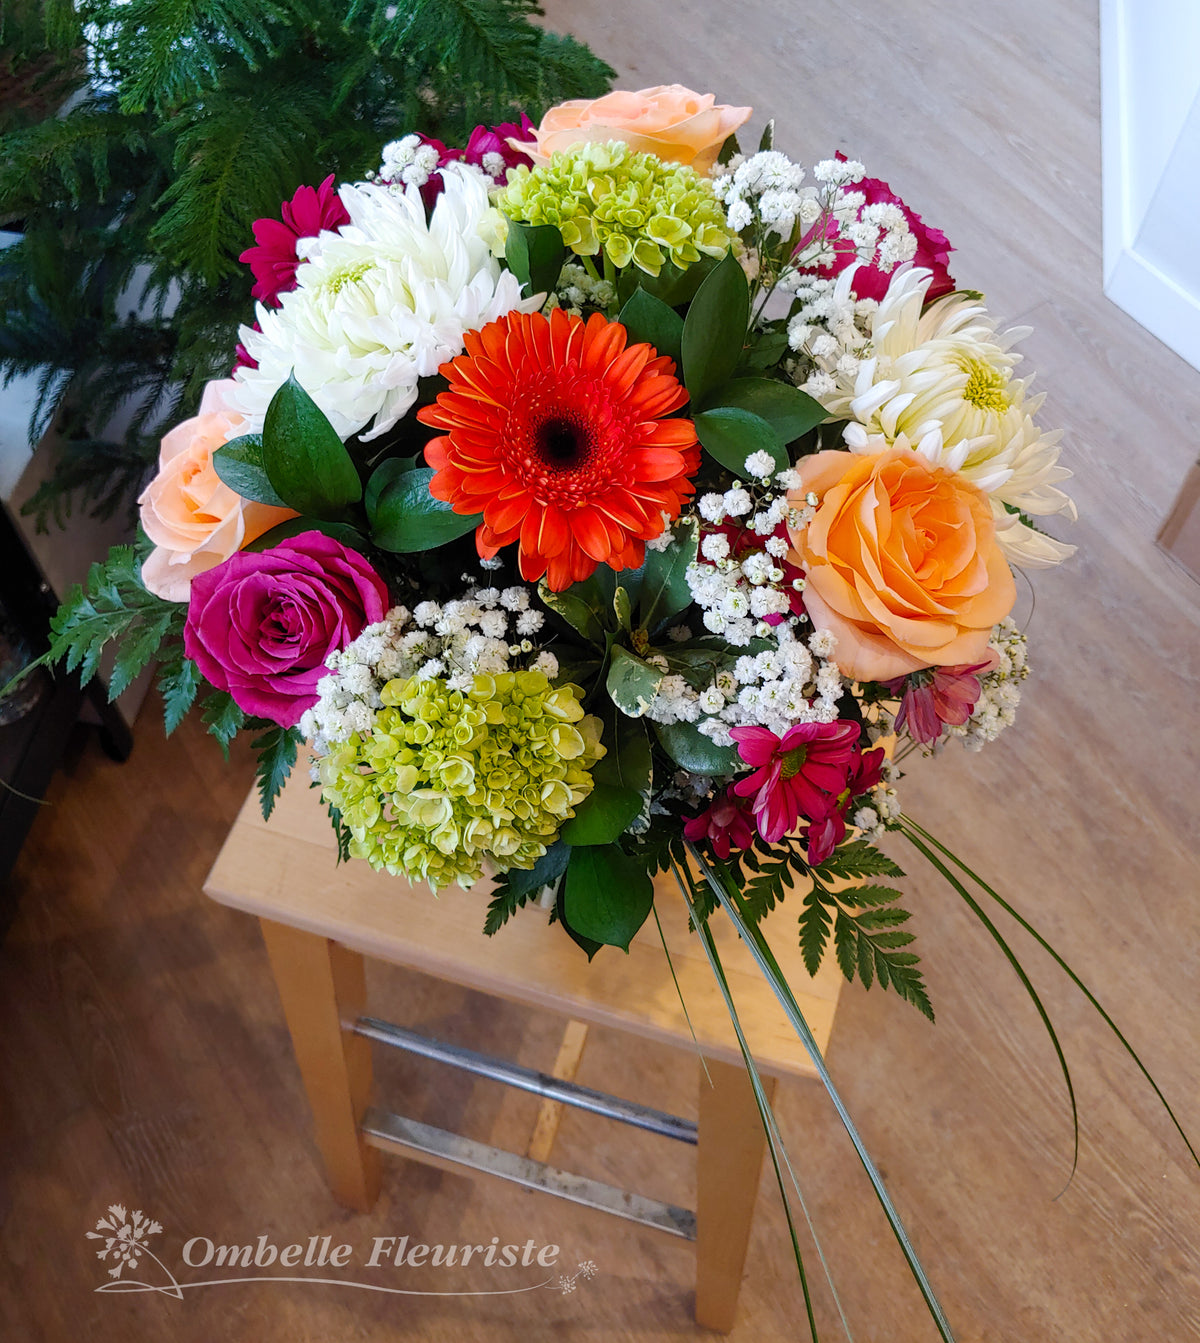 Ombelle Fleuriste - Bouquet de fleurs Lyane